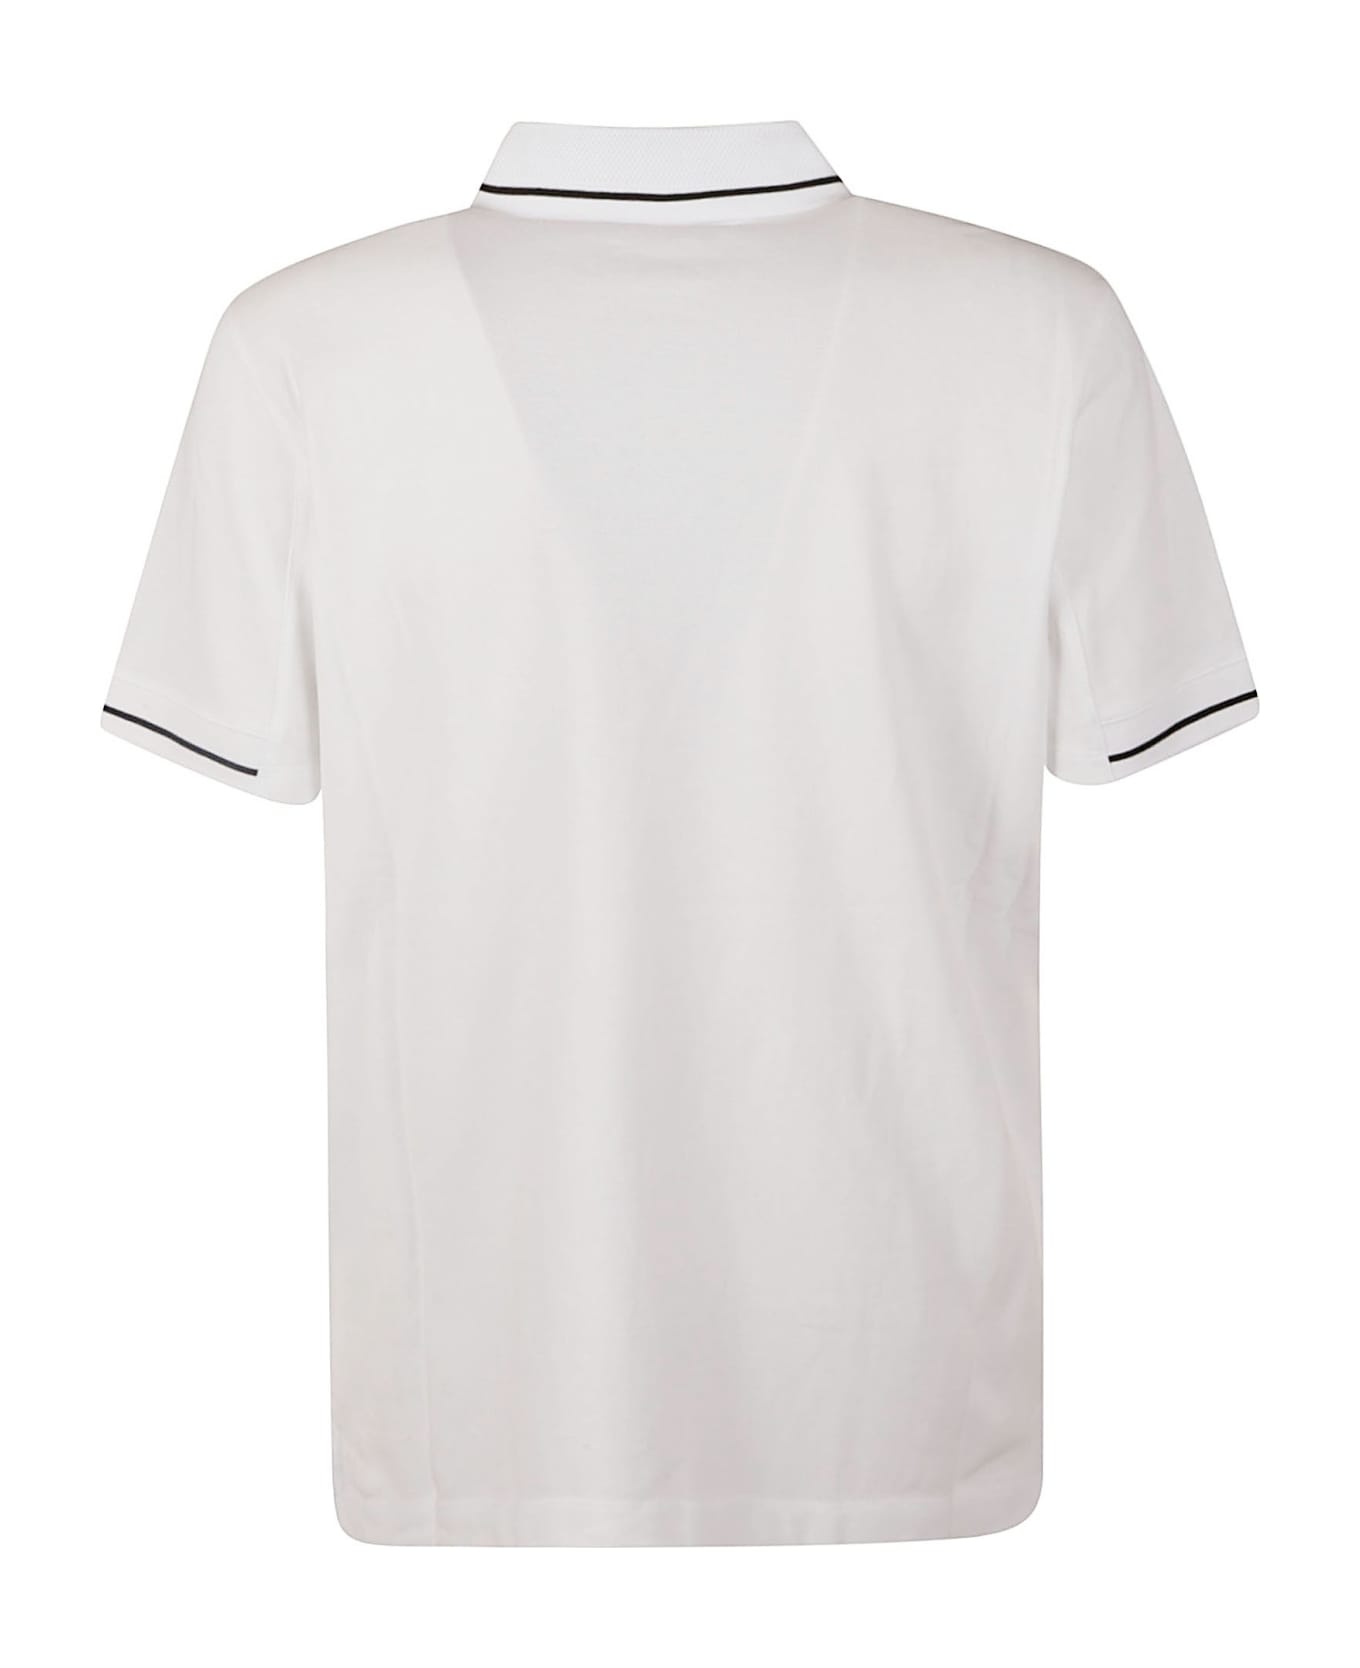 Moncler Logo Patched Polo Shirt - Non definito